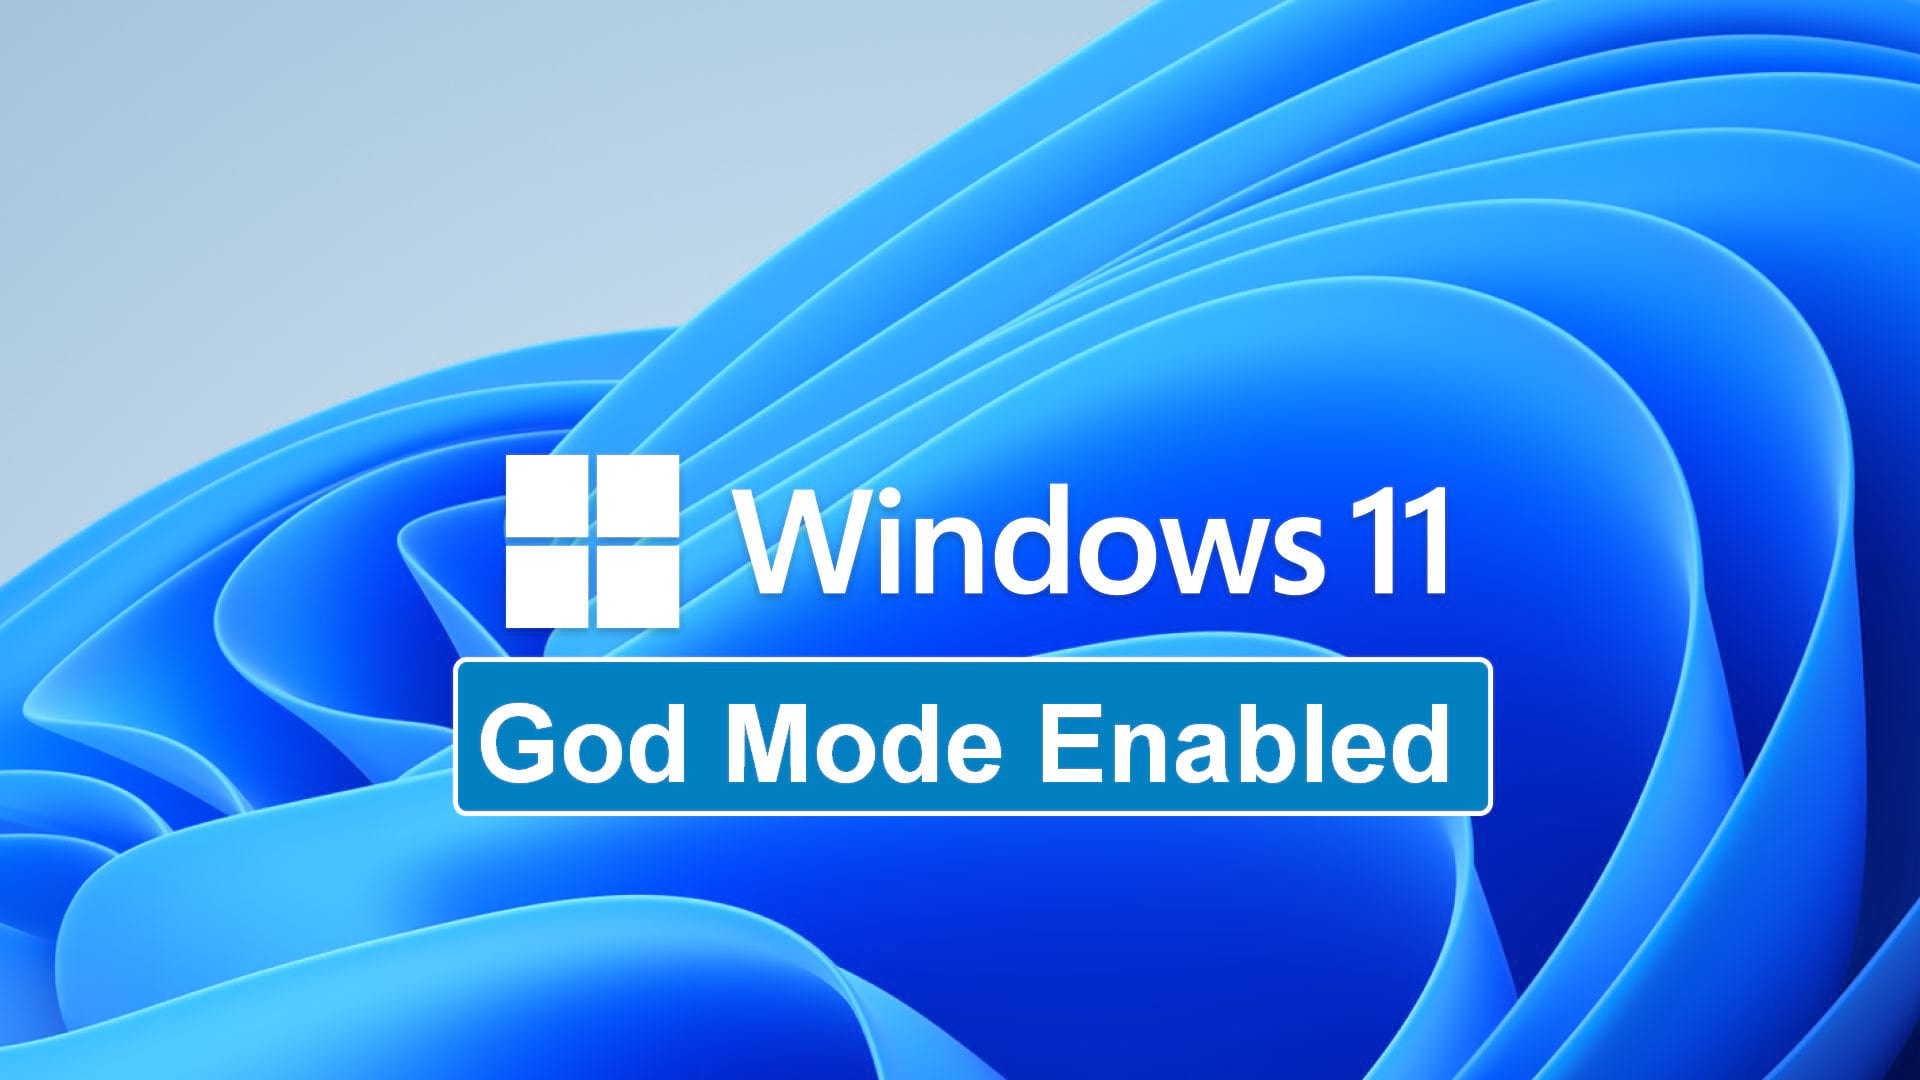 Bật chế độ god-mode trên Windows 11 là cách hiệu quả để truy cập và sử dụng các tính năng ẩn của máy tính. Đừng lo lắng, với hình ảnh liên quan, bạn sẽ được hướng dẫn cách bật chế độ god-mode dễ dàng, nhanh chóng. Hãy cùng khám phá và tận hưởng những tính năng tuyệt vời của máy tính.